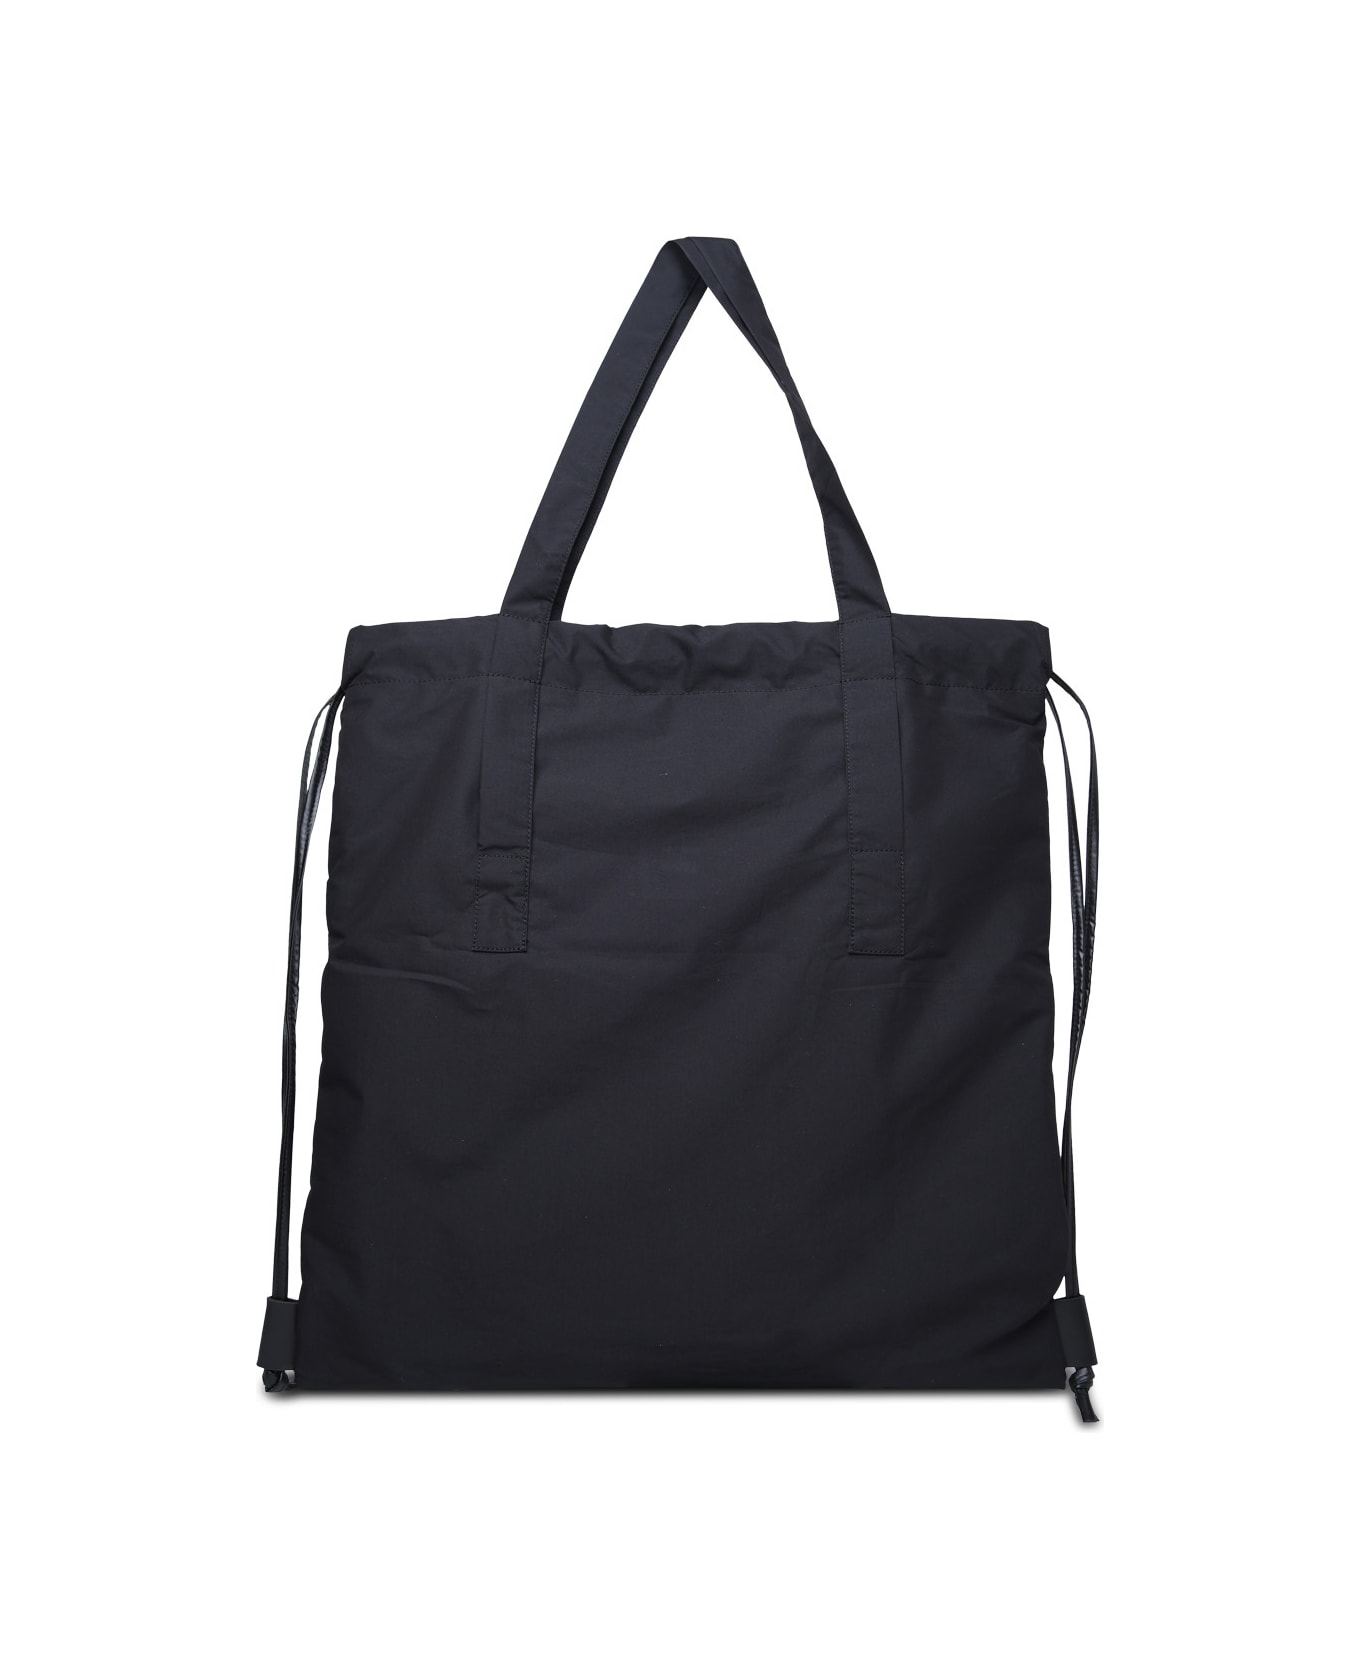 Moncler Black Cotton Blend Tote Bag - Black トートバッグ